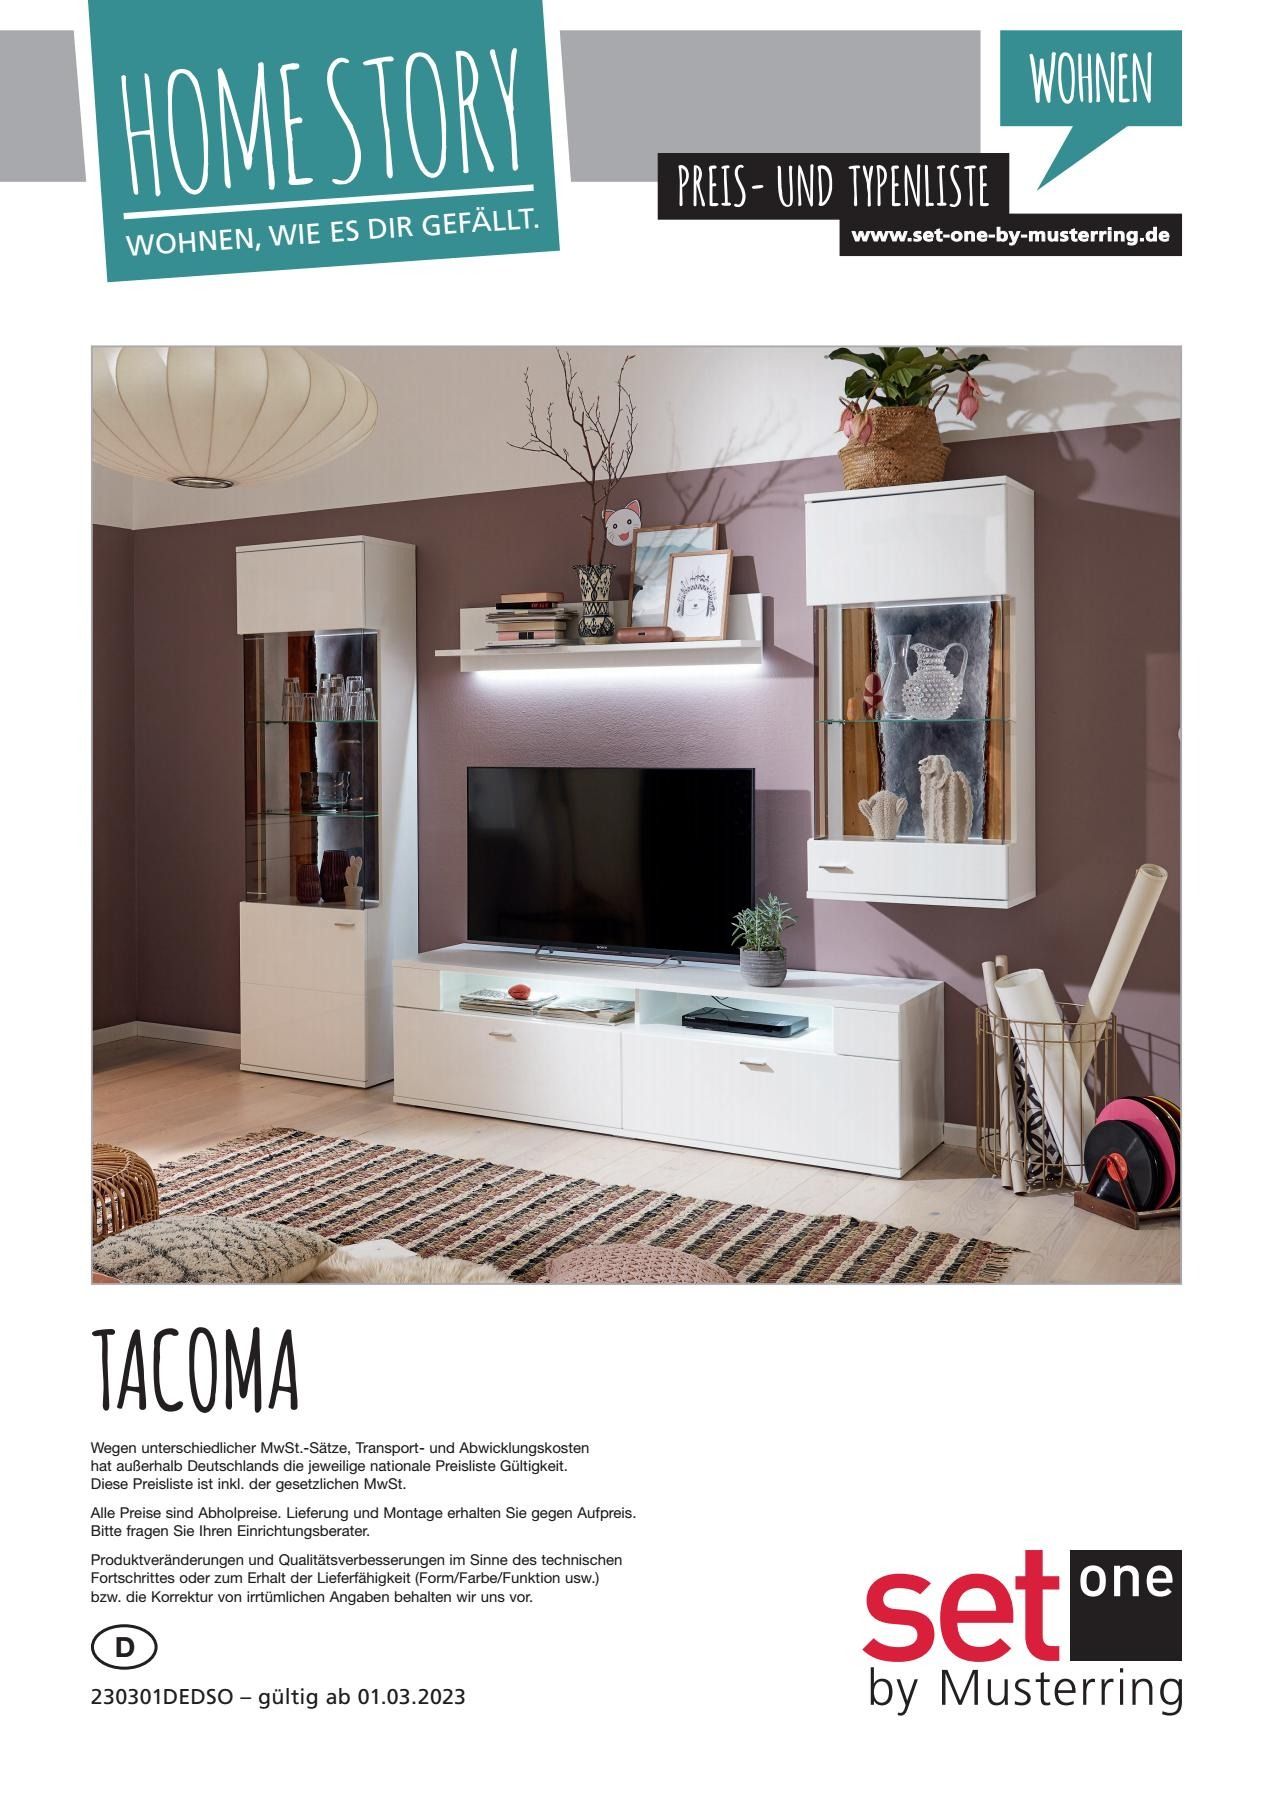 Wohnwand tacoma | Vorschläge one weiß set 